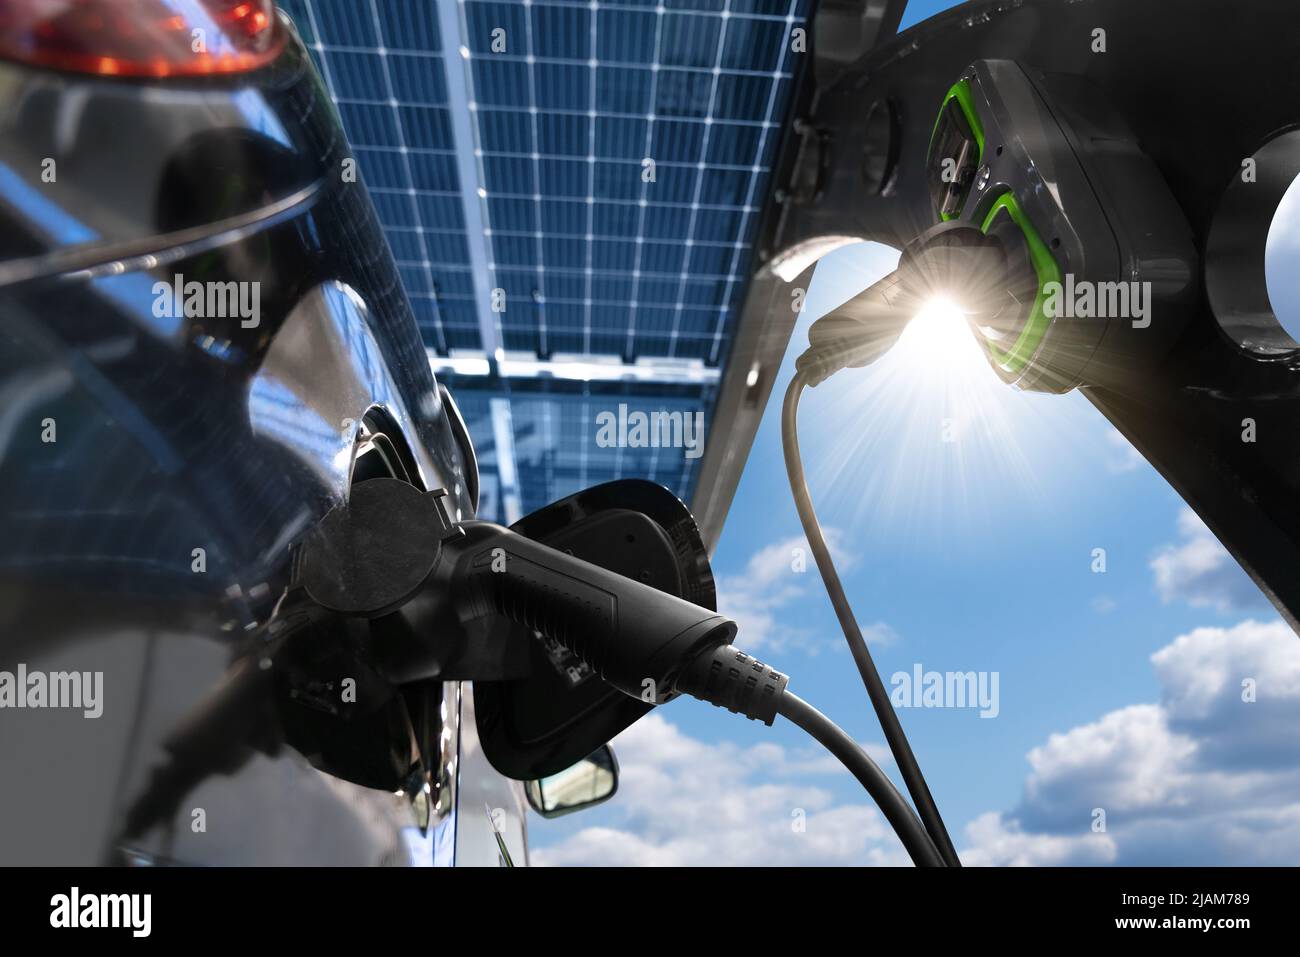 La voiture électrique est chargée à partir d'une station de charge au port de voiture qui prend l'énergie des panneaux solaires. Gros plan Banque D'Images